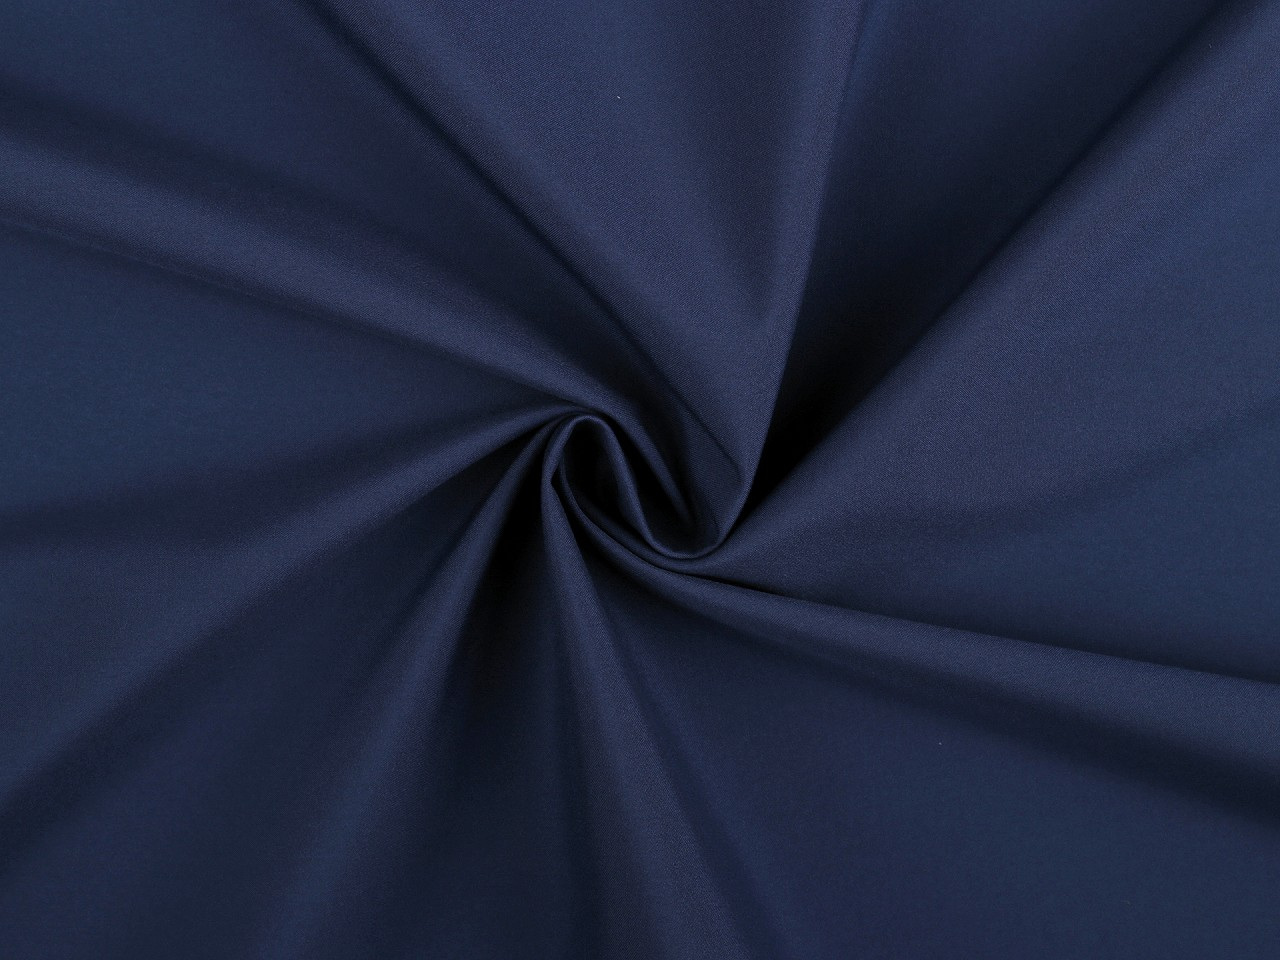 Letní softshell, barva 6 (423) modrá pařížská